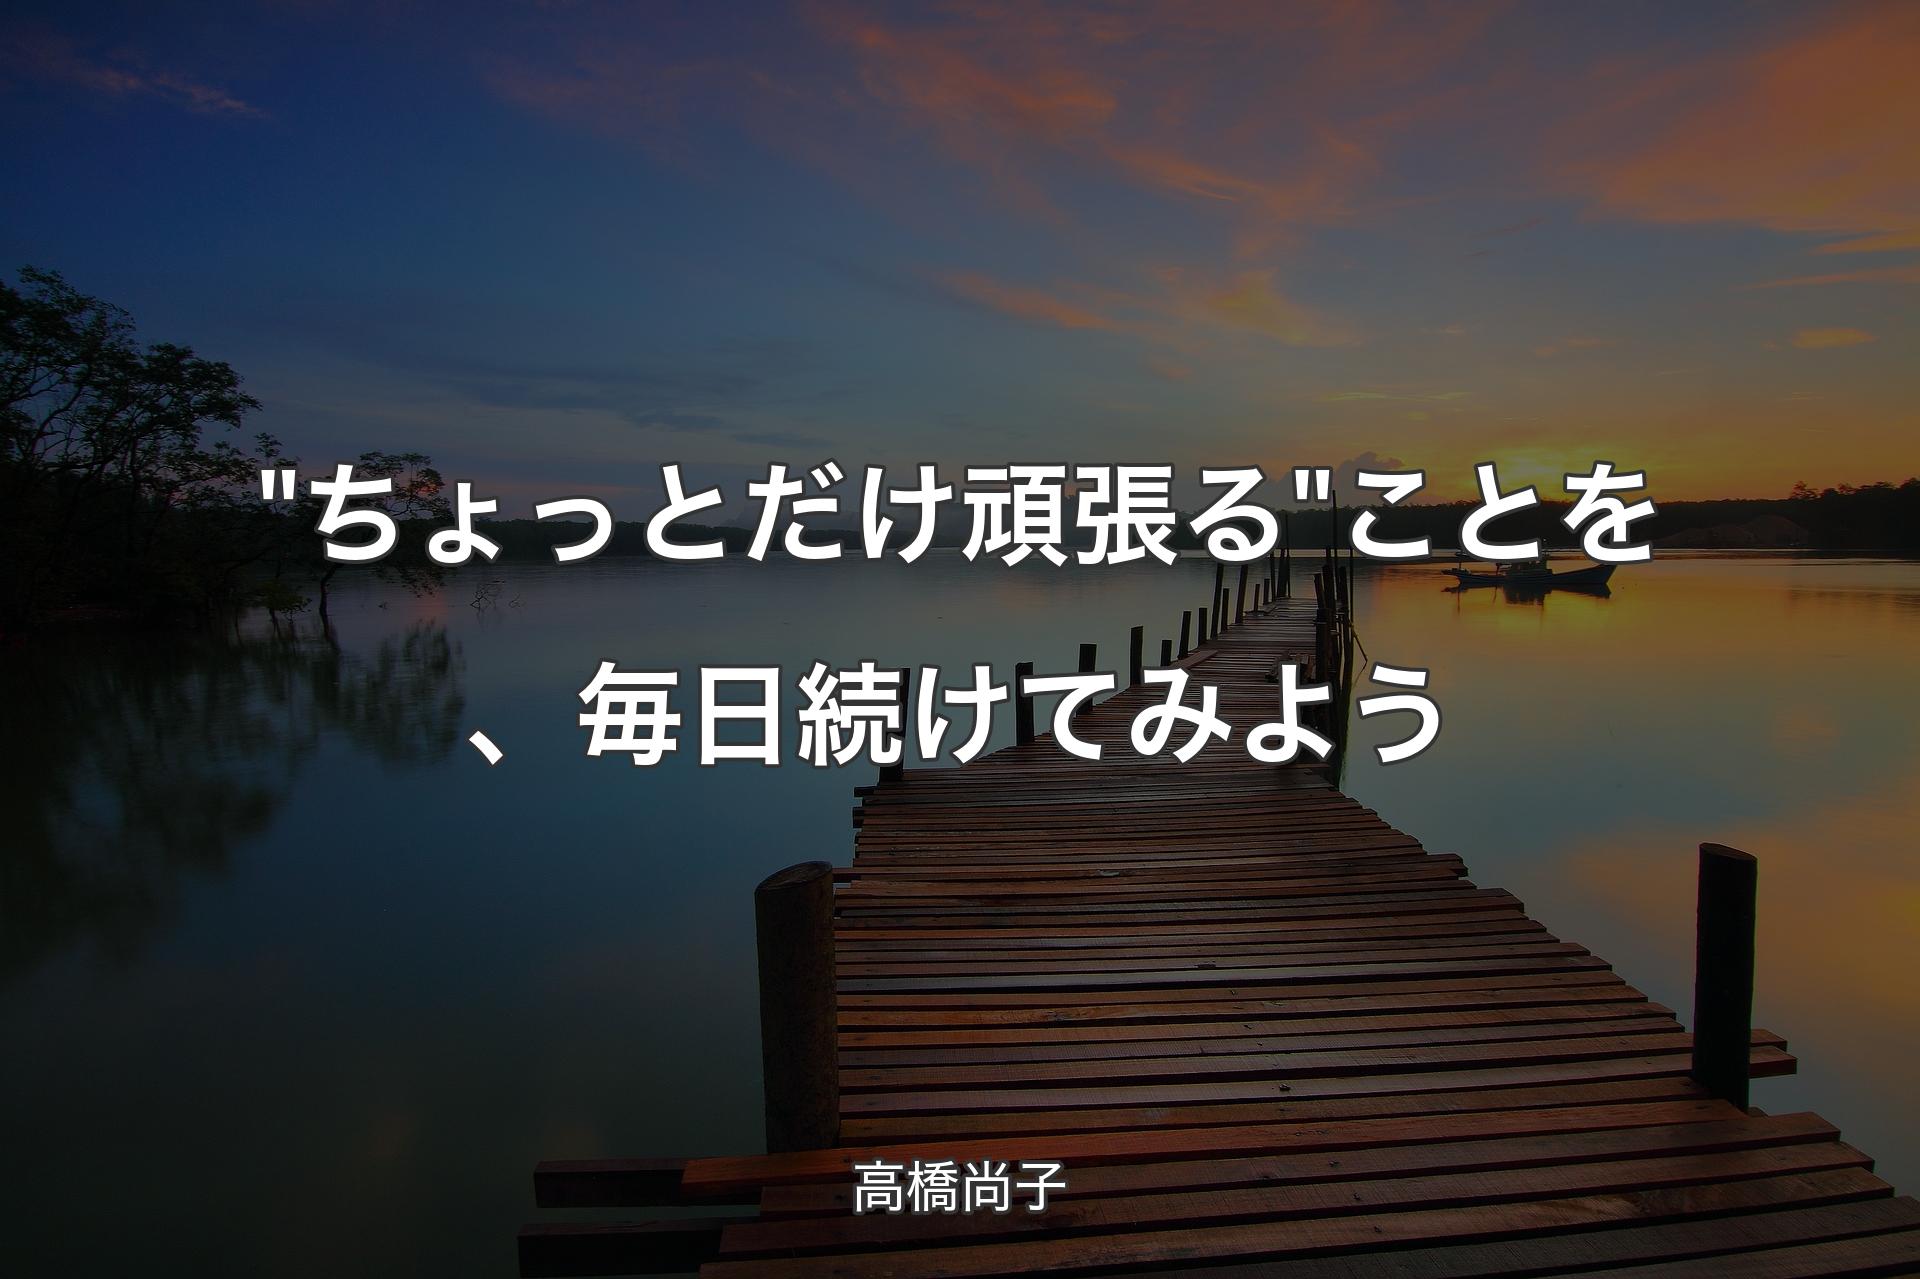 【背景3】"ちょっとだけ頑張る" ことを、毎日続けてみよう - 高橋尚子